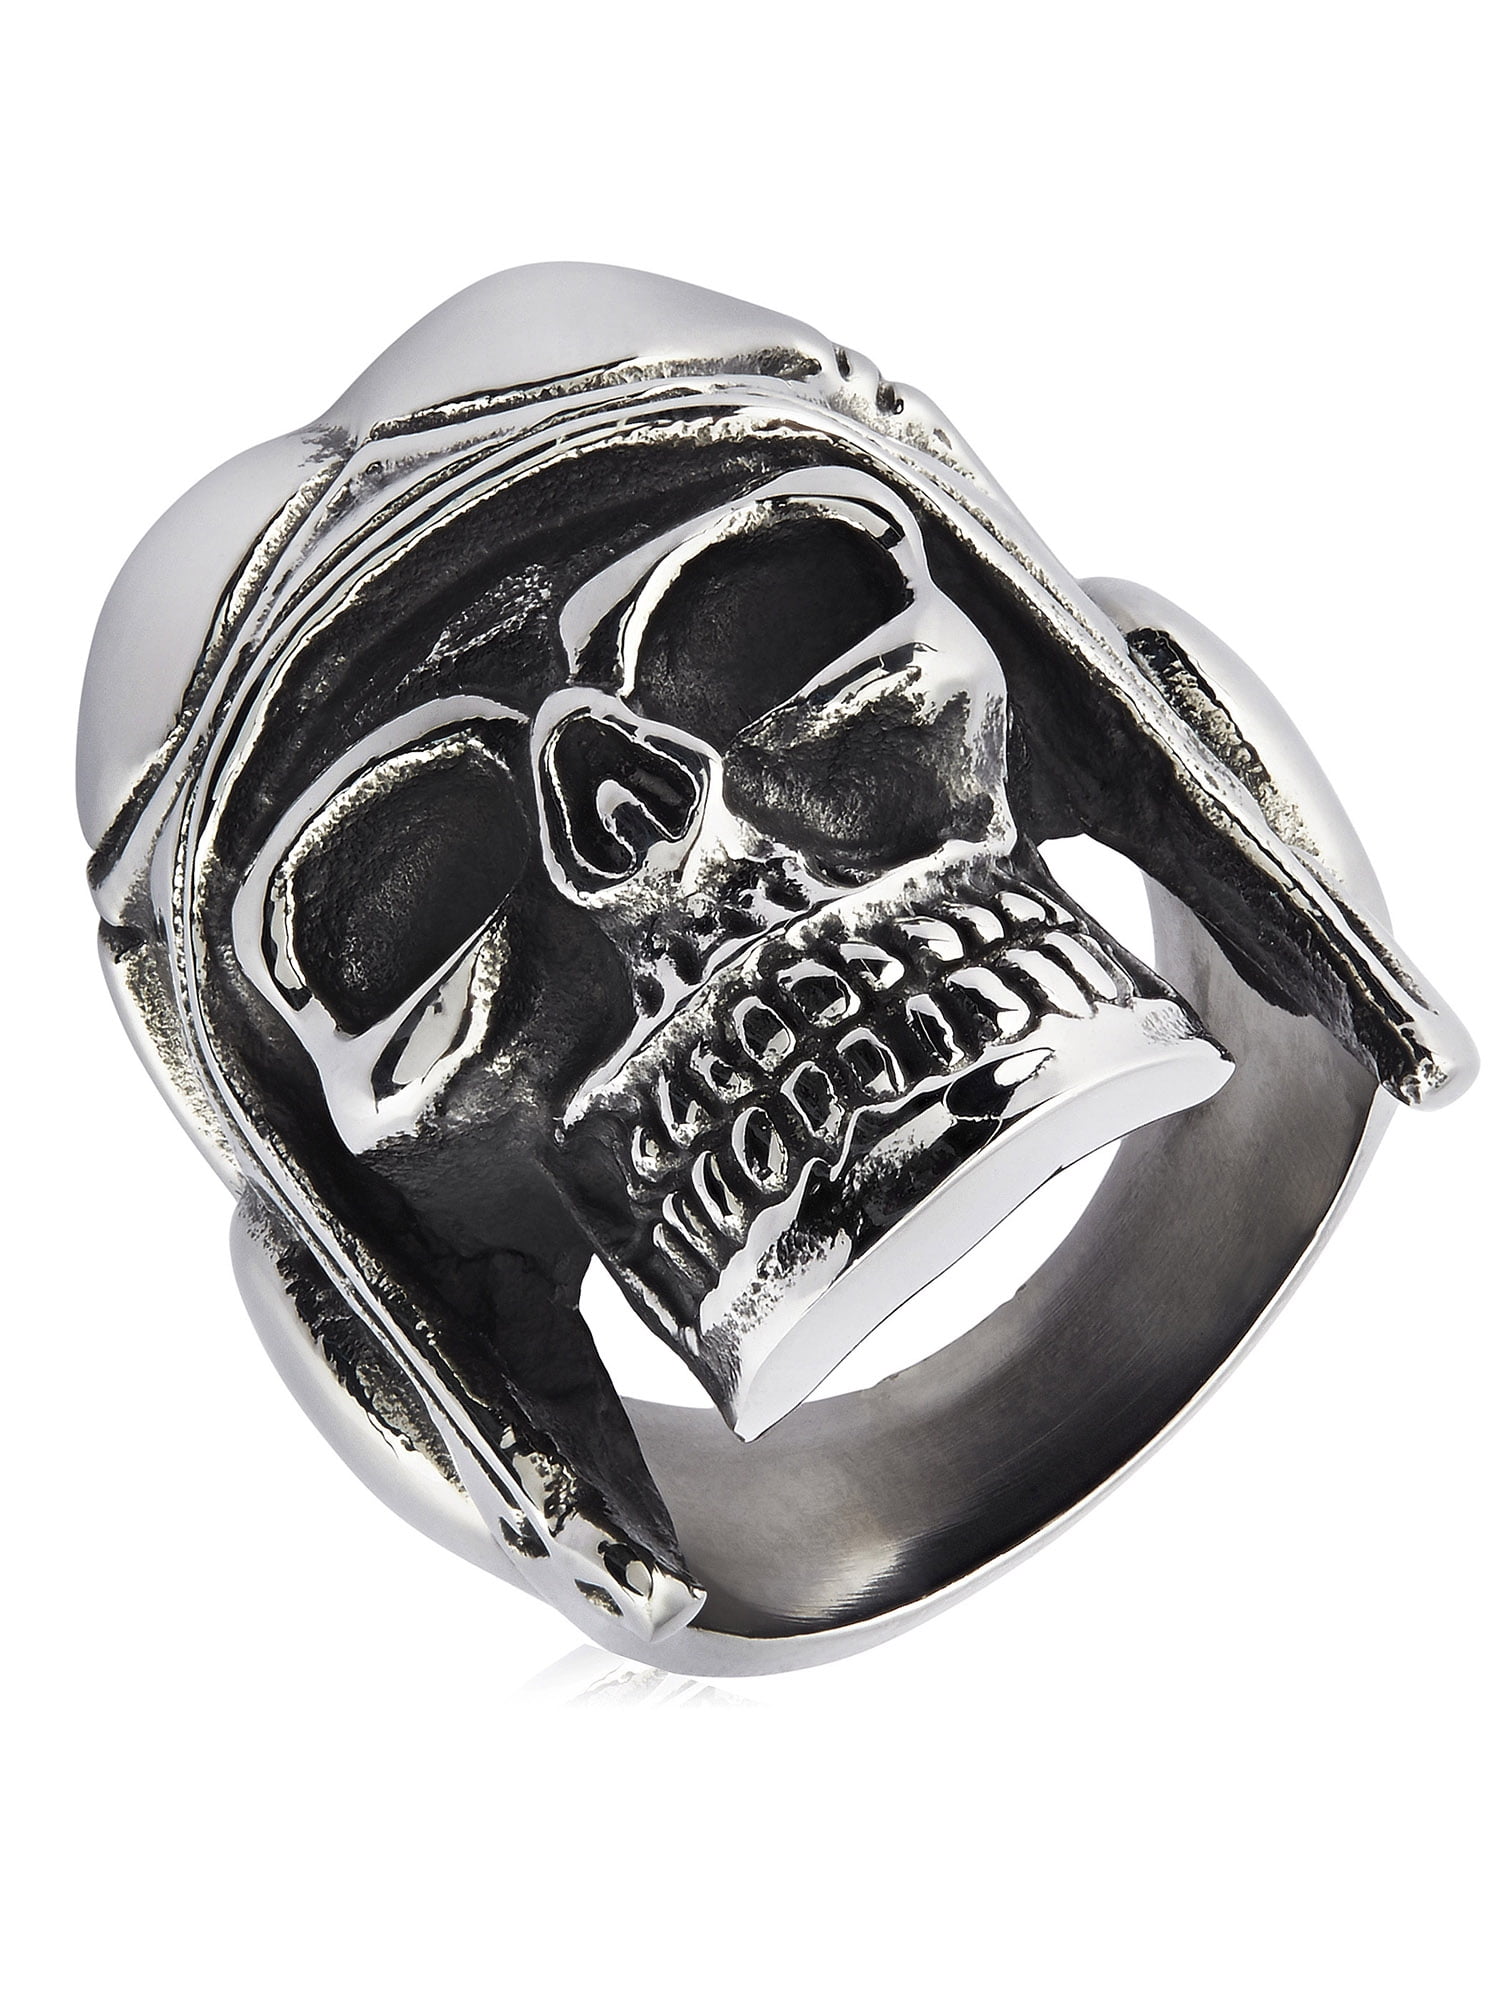 SKULL Ring Stainless Steel Finger Scorpion Men Biker Jewelry SZ 8 9 10 11 12 NEW 